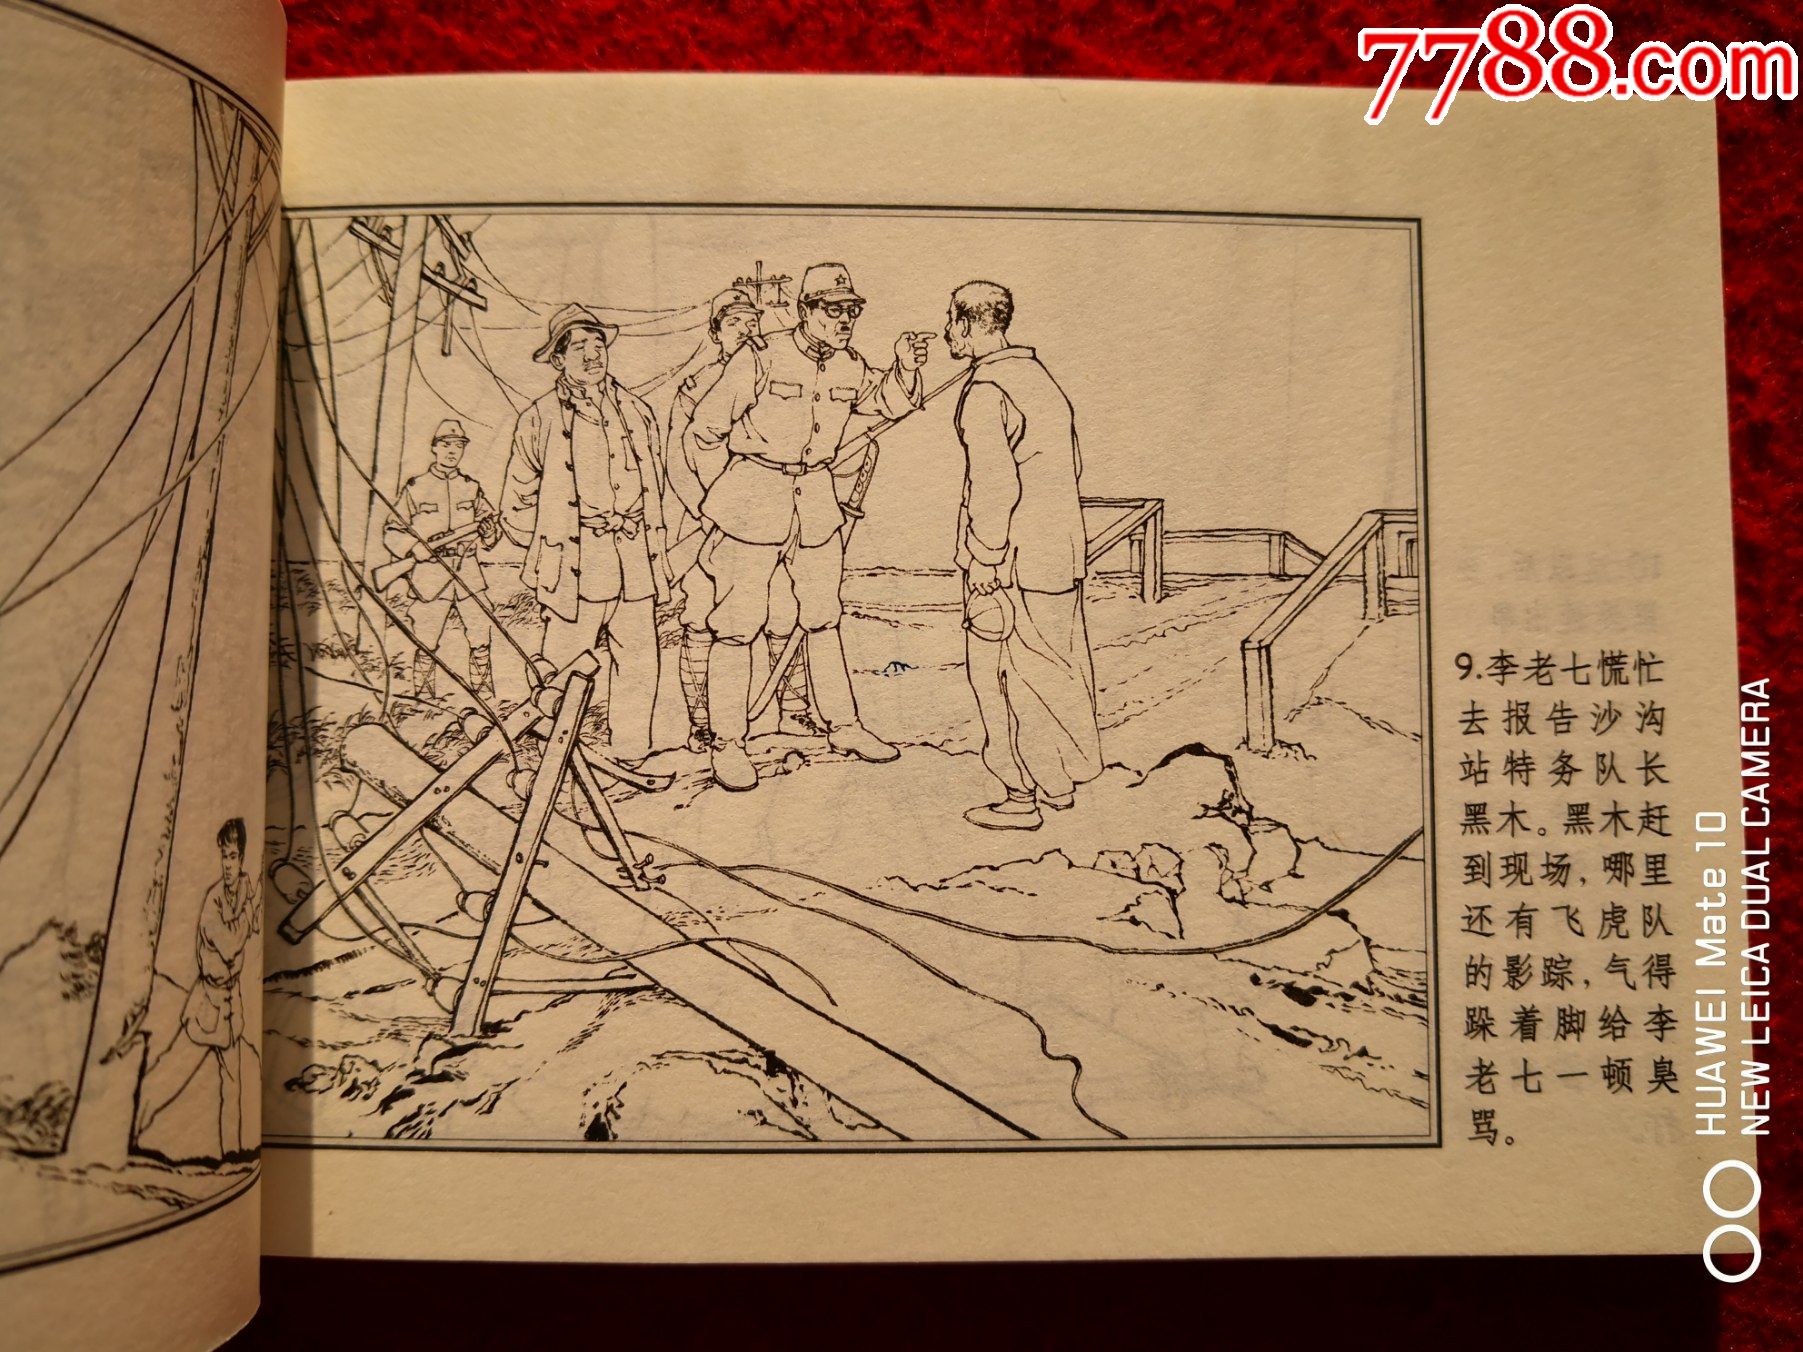 获奖连环画铁道游击队之七二烈士韩和平丁斌曾绘画连环画出版社